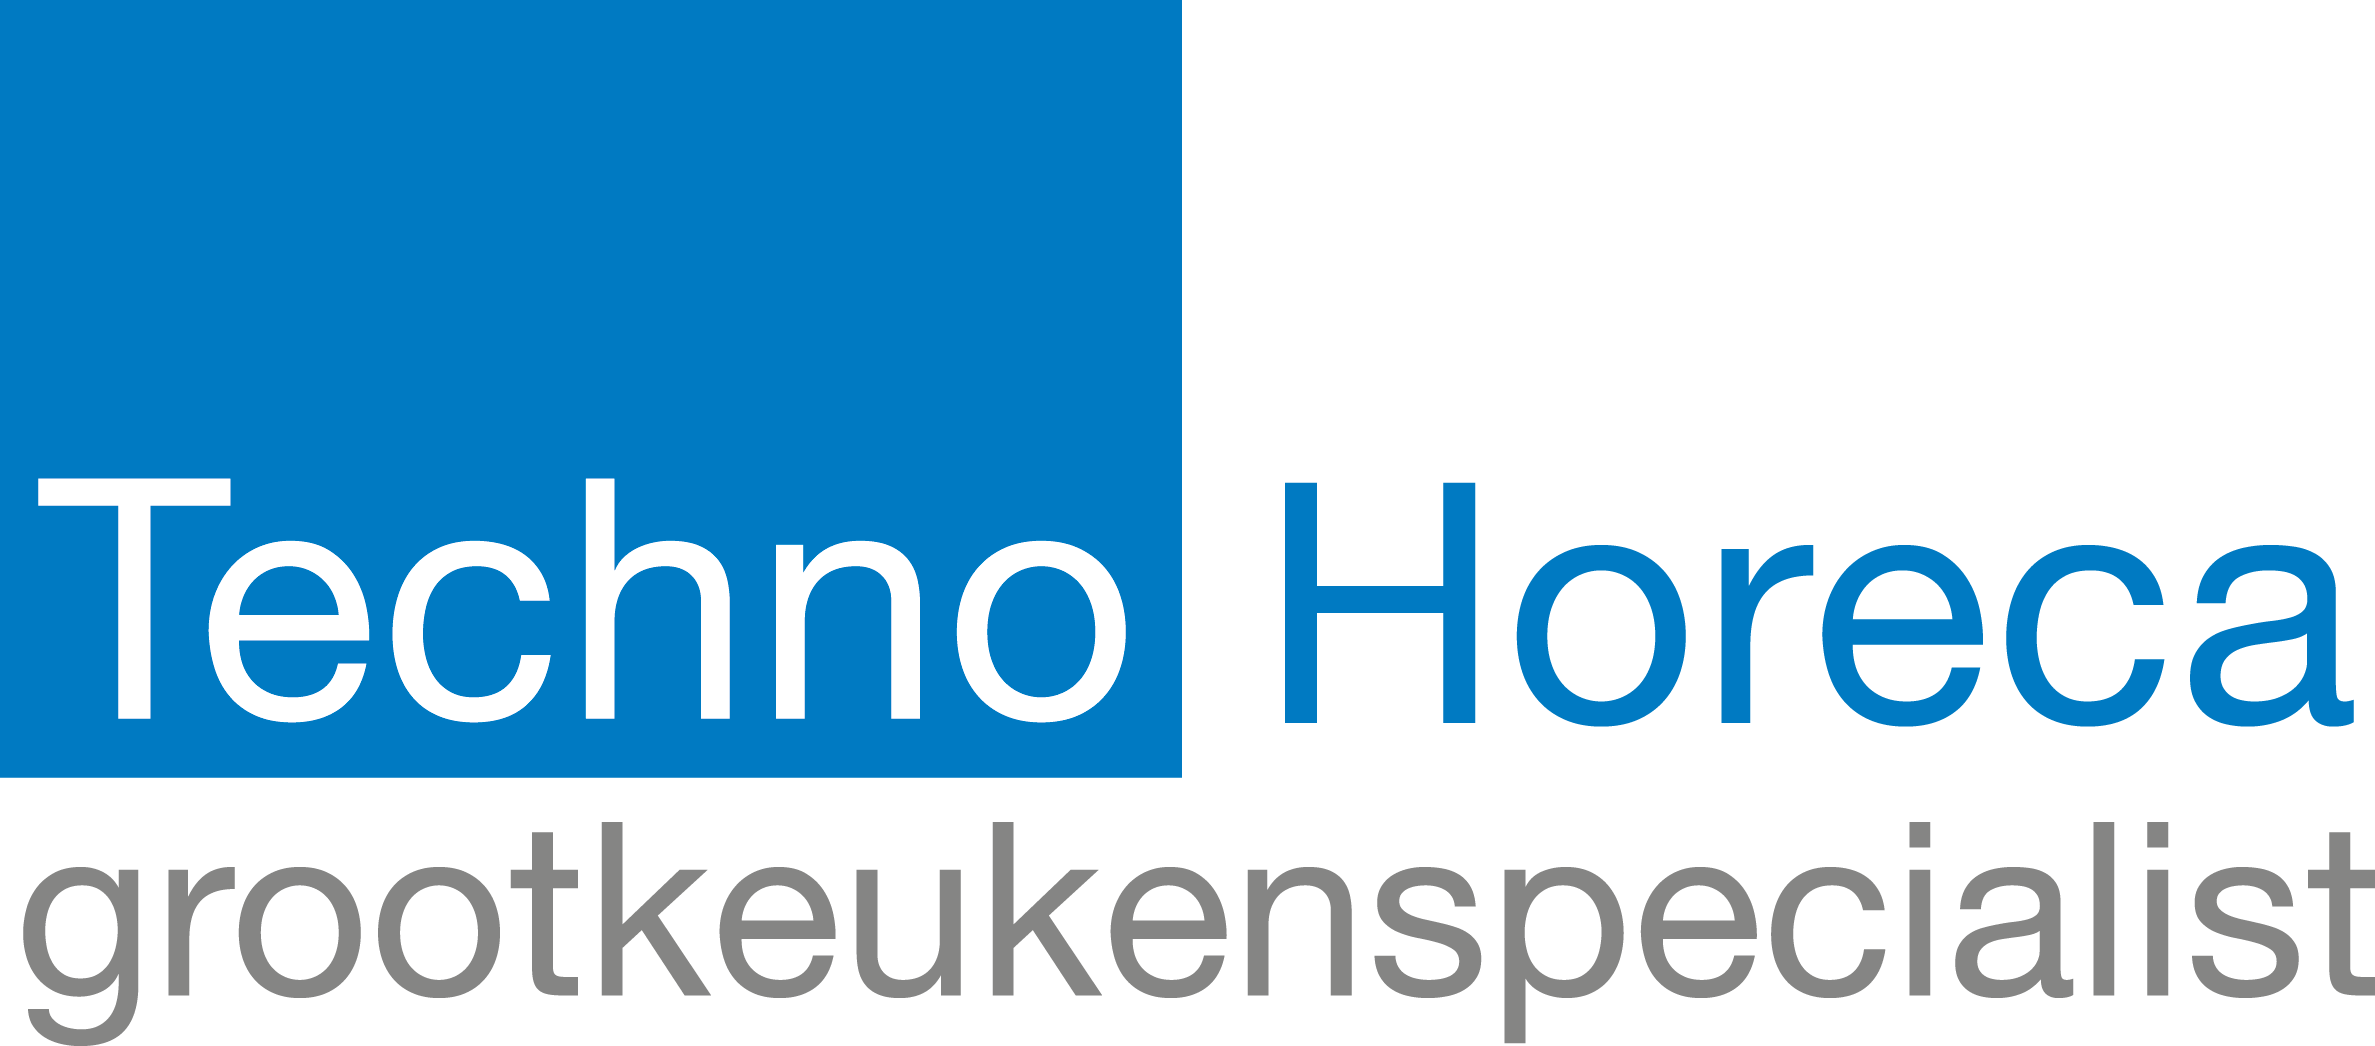 logo-TechnoHoreca